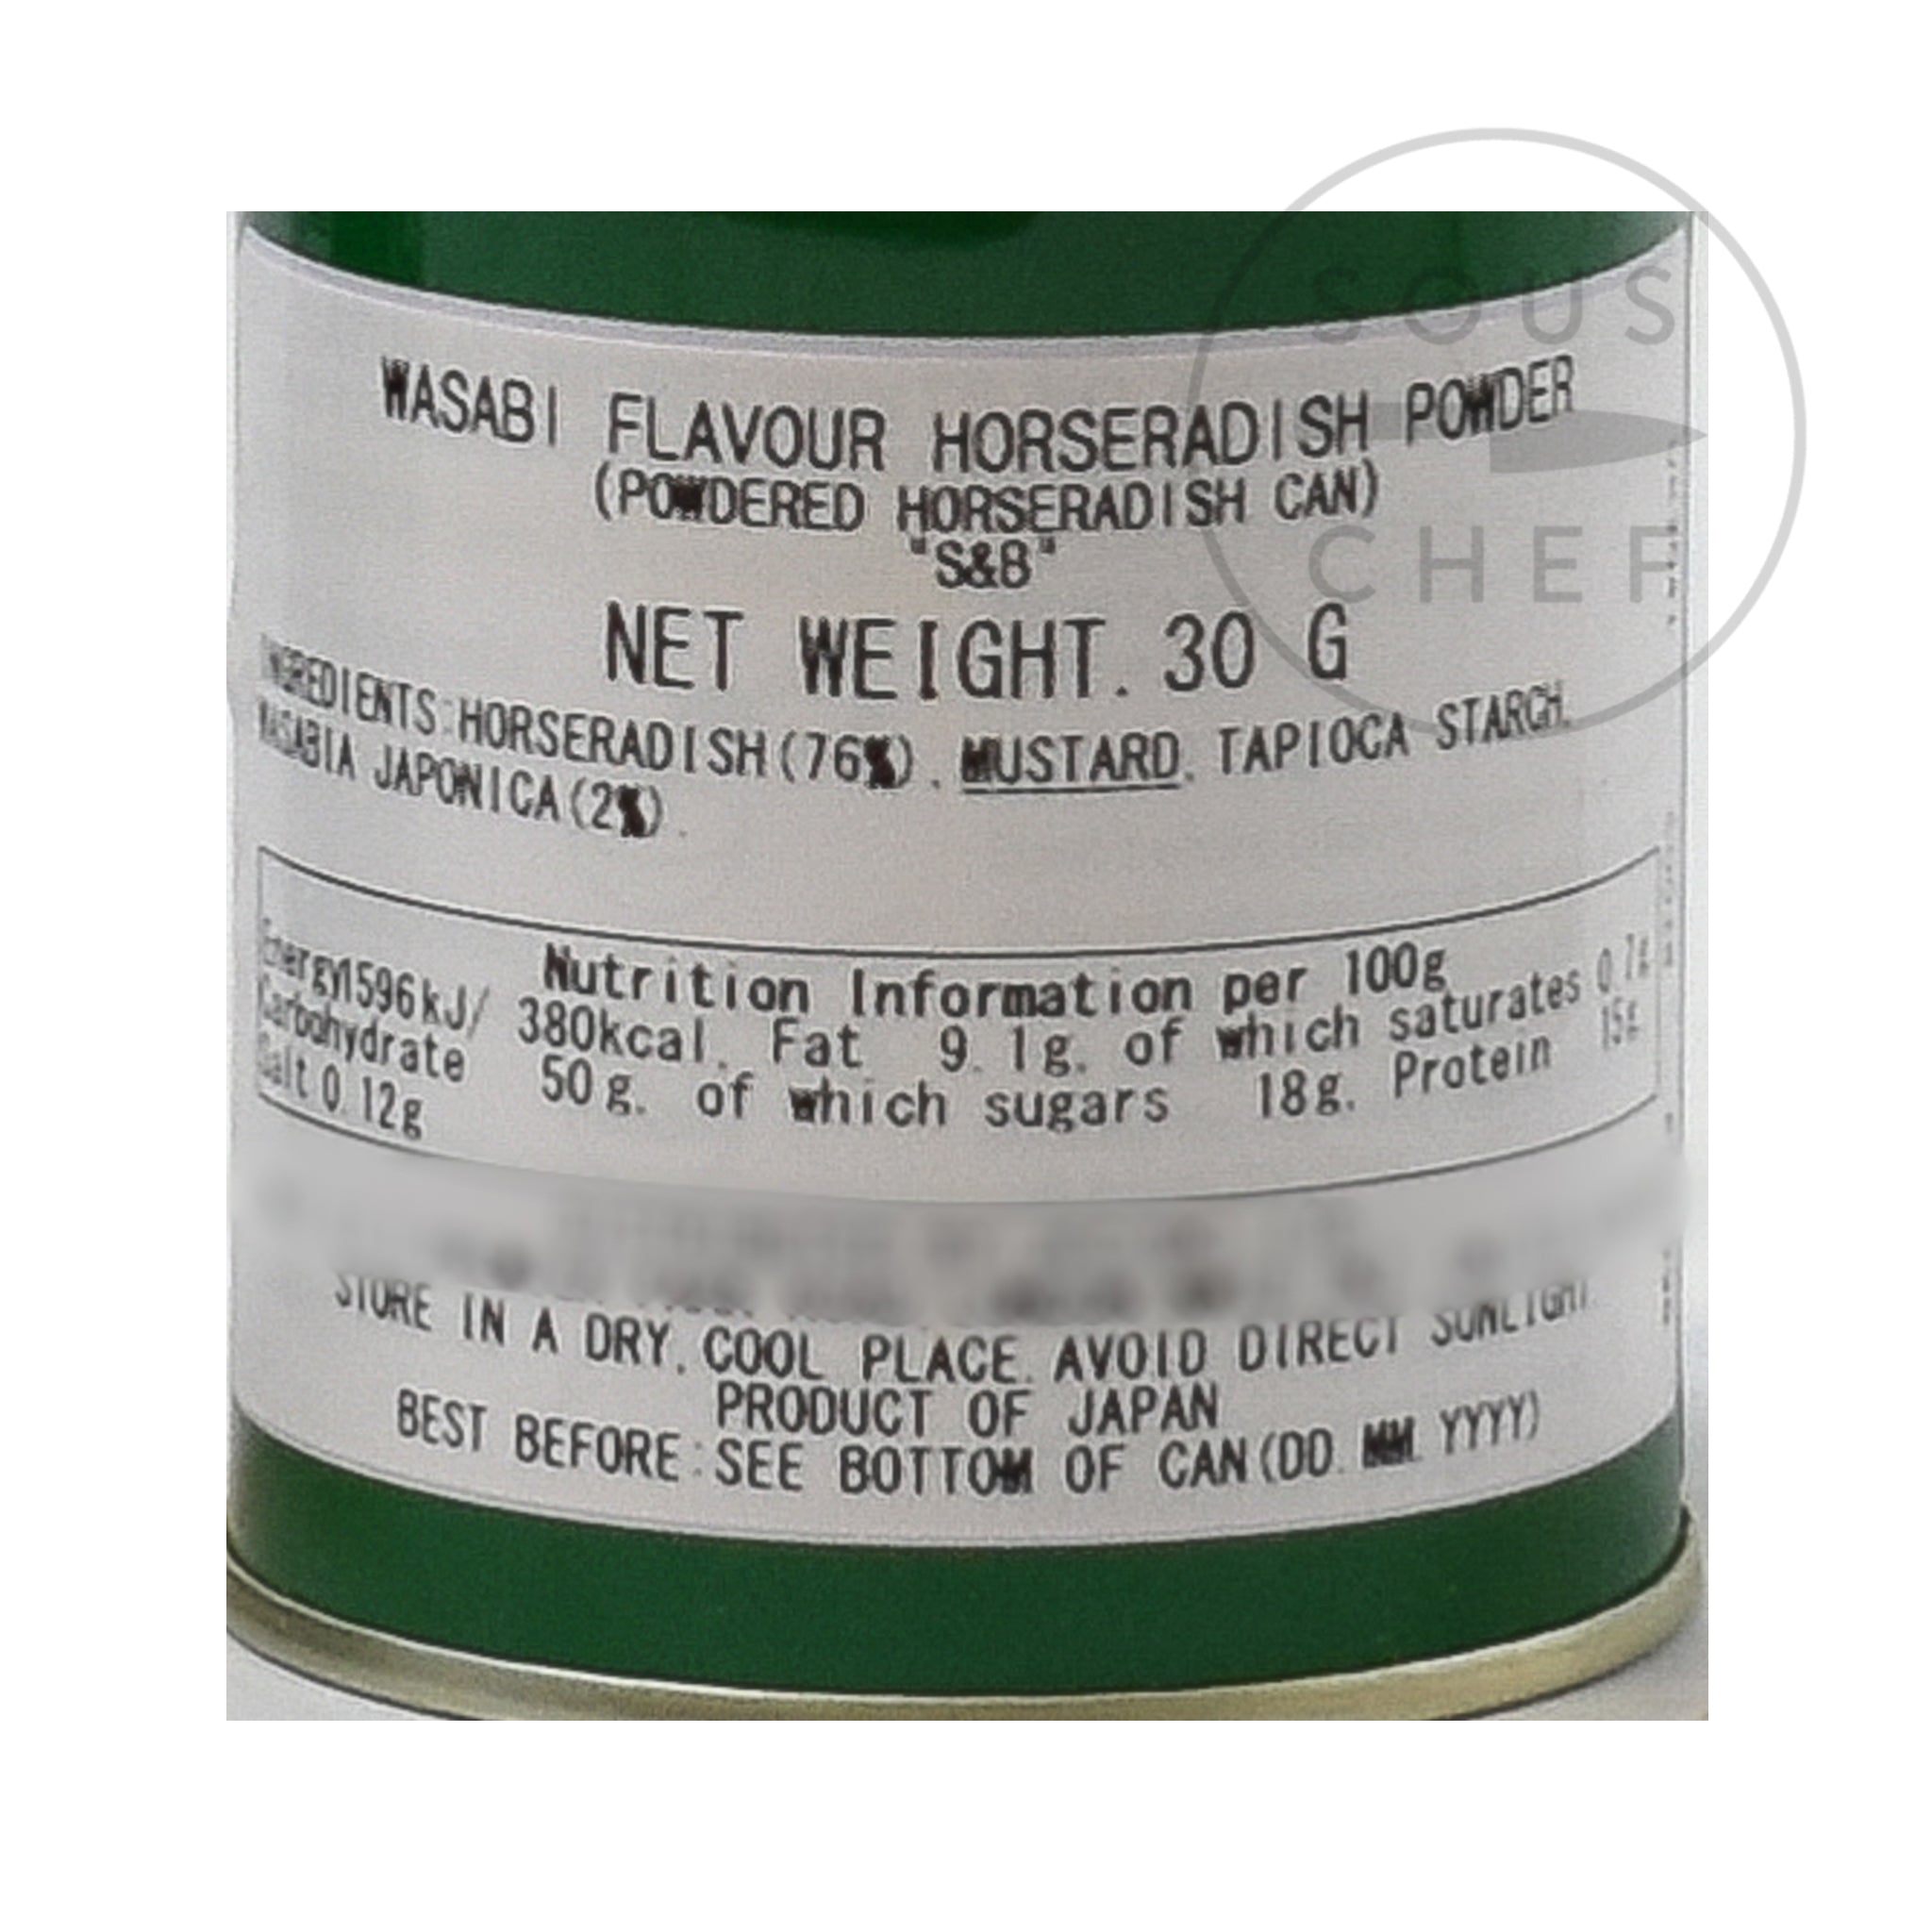 Wasabi Flavour Horseradish Powder 30g nutritional information ingredients